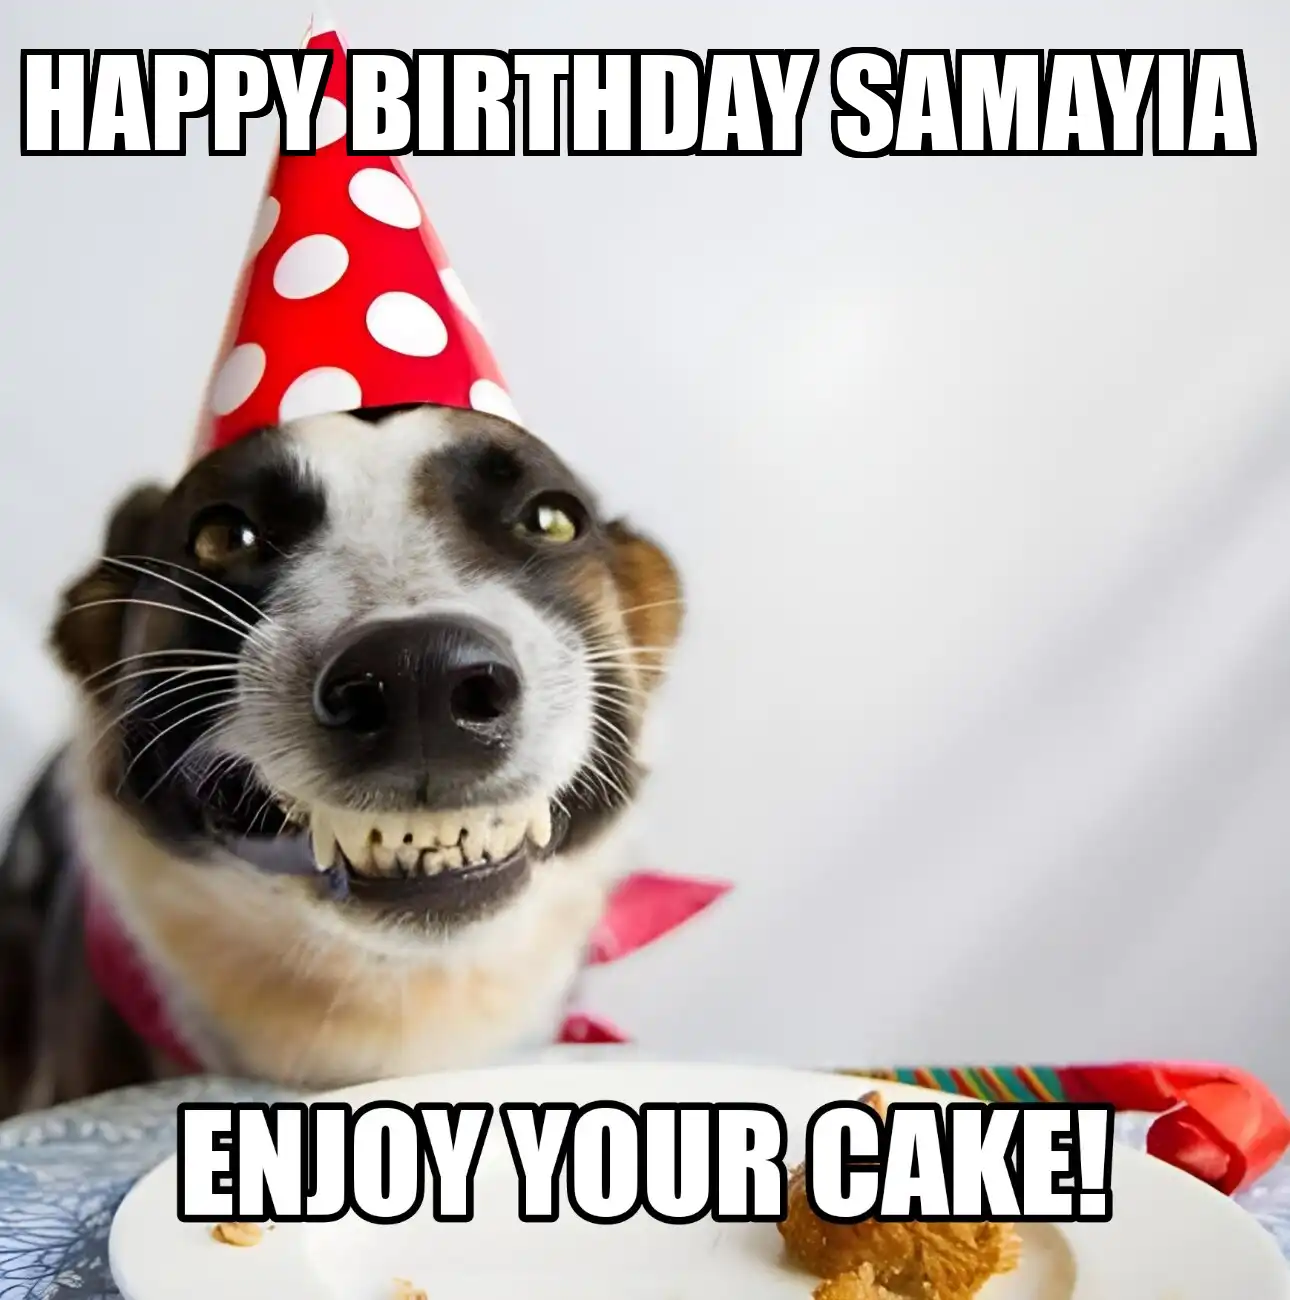 Happy Birthday Samayia Enjoy Your Cake Dog Meme